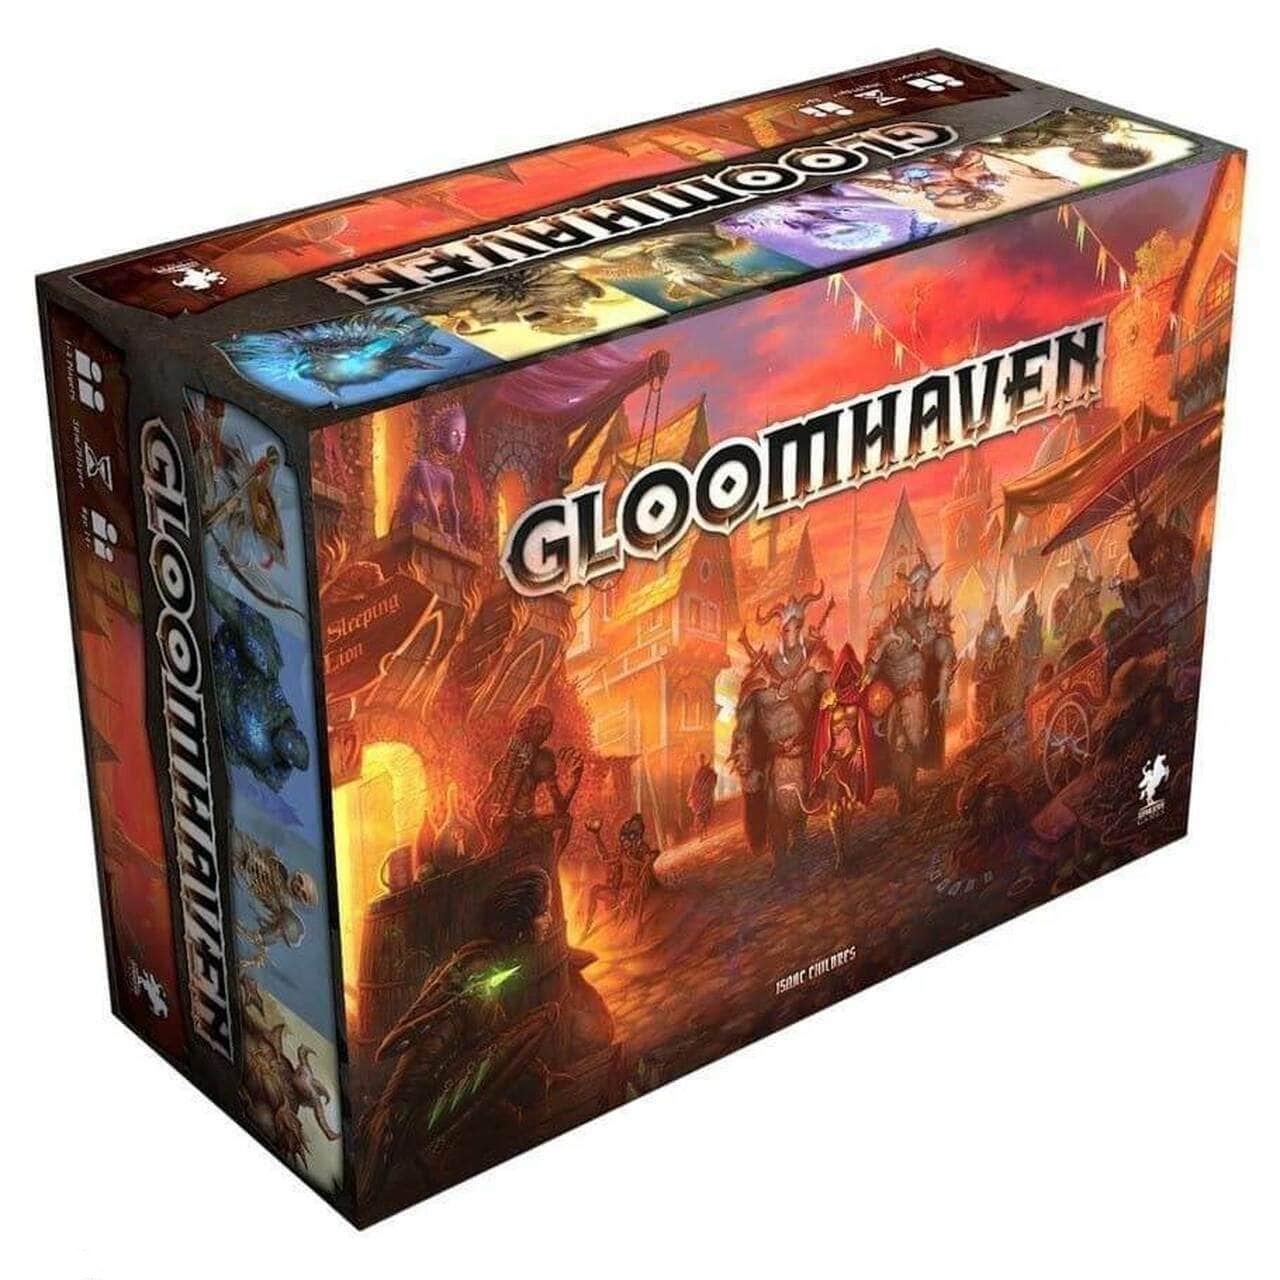 Gloomhaven (Kickstarter Special) Kickstarter brädspel Cephalofair Games 0019962195013 KS000217